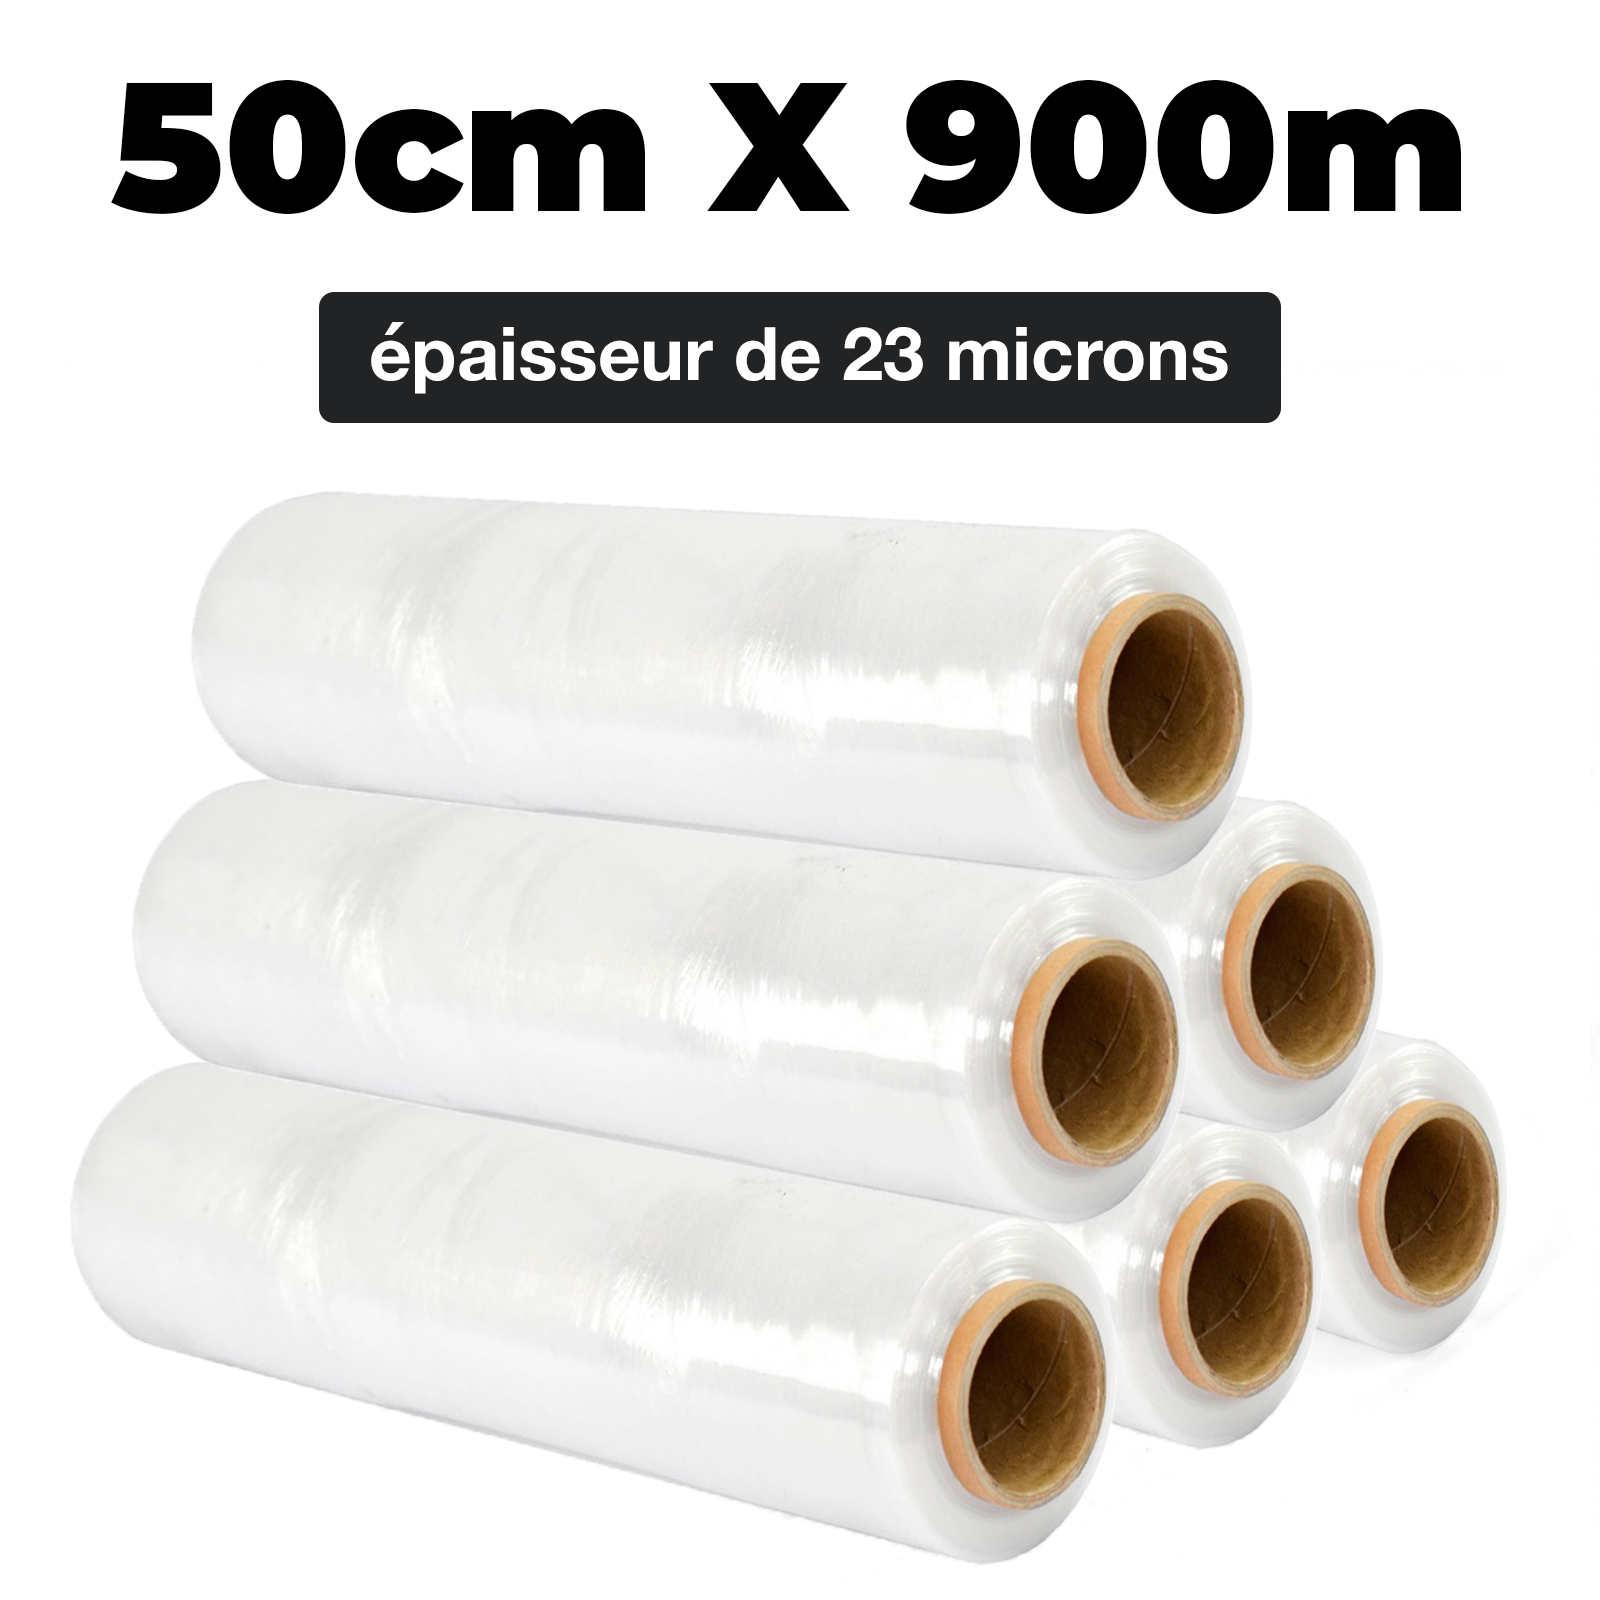 1 Rouleu Transparent Rouleau de 150 mètres de long et 500 mm de large Film pour palette résistant à la déchirur 23 microns d'épaisseur Film étirable V1 Trade 